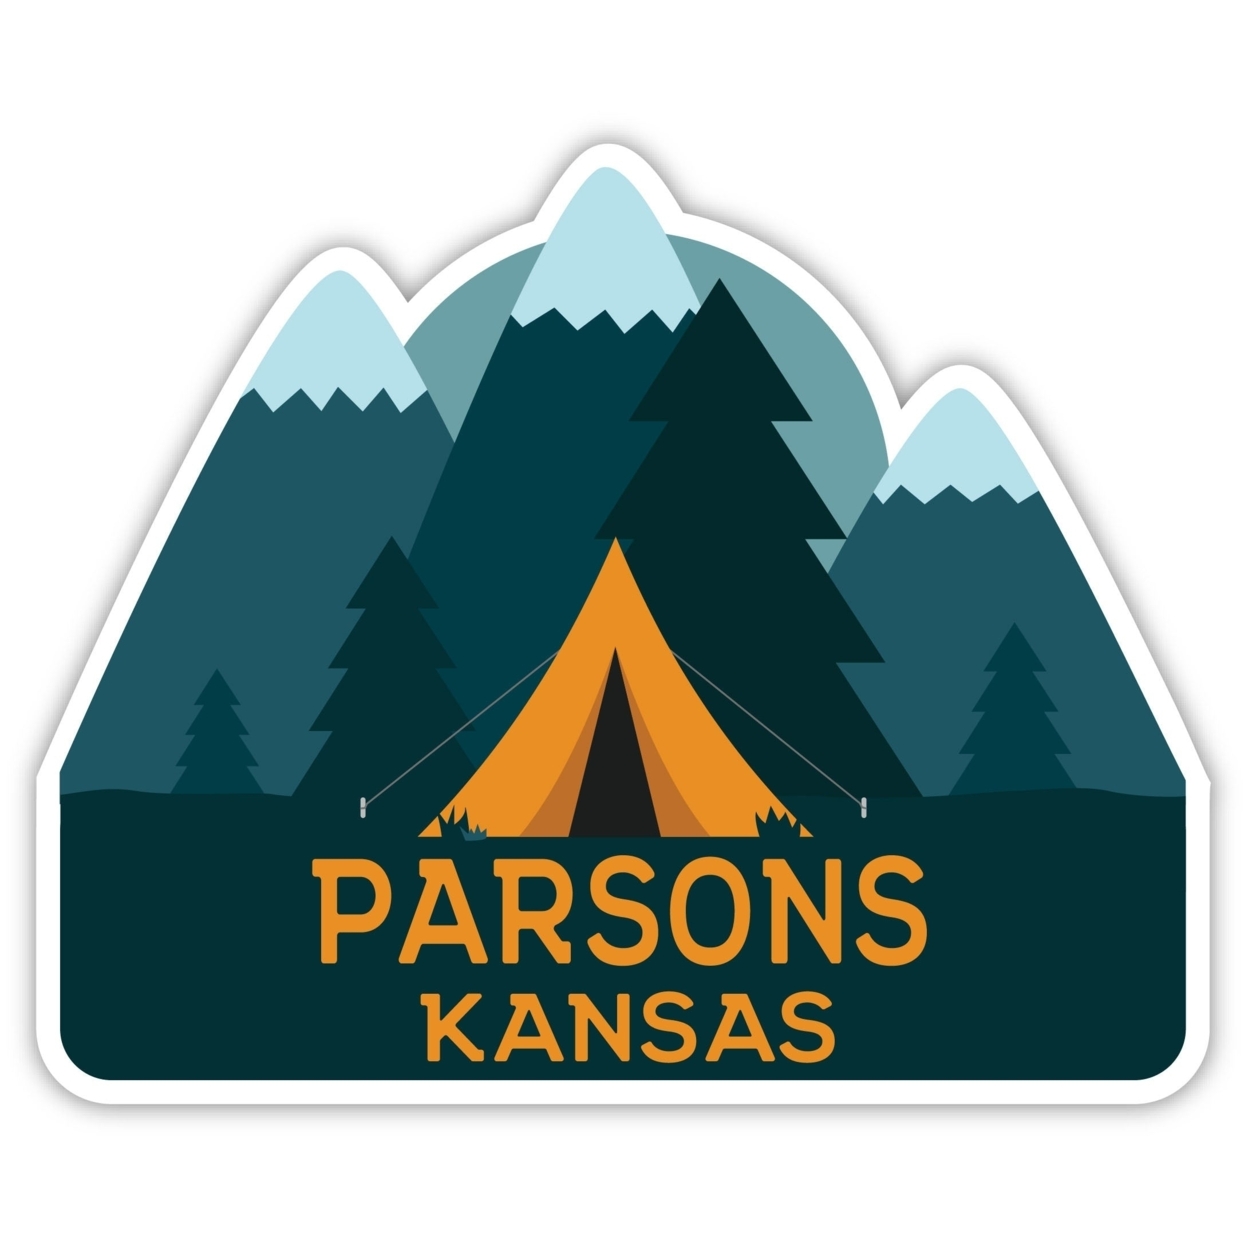 Parsons Kansas Souvenir Decorative Stickers (Choose Theme And Size) - Single Unit, 2-Inch, Tent